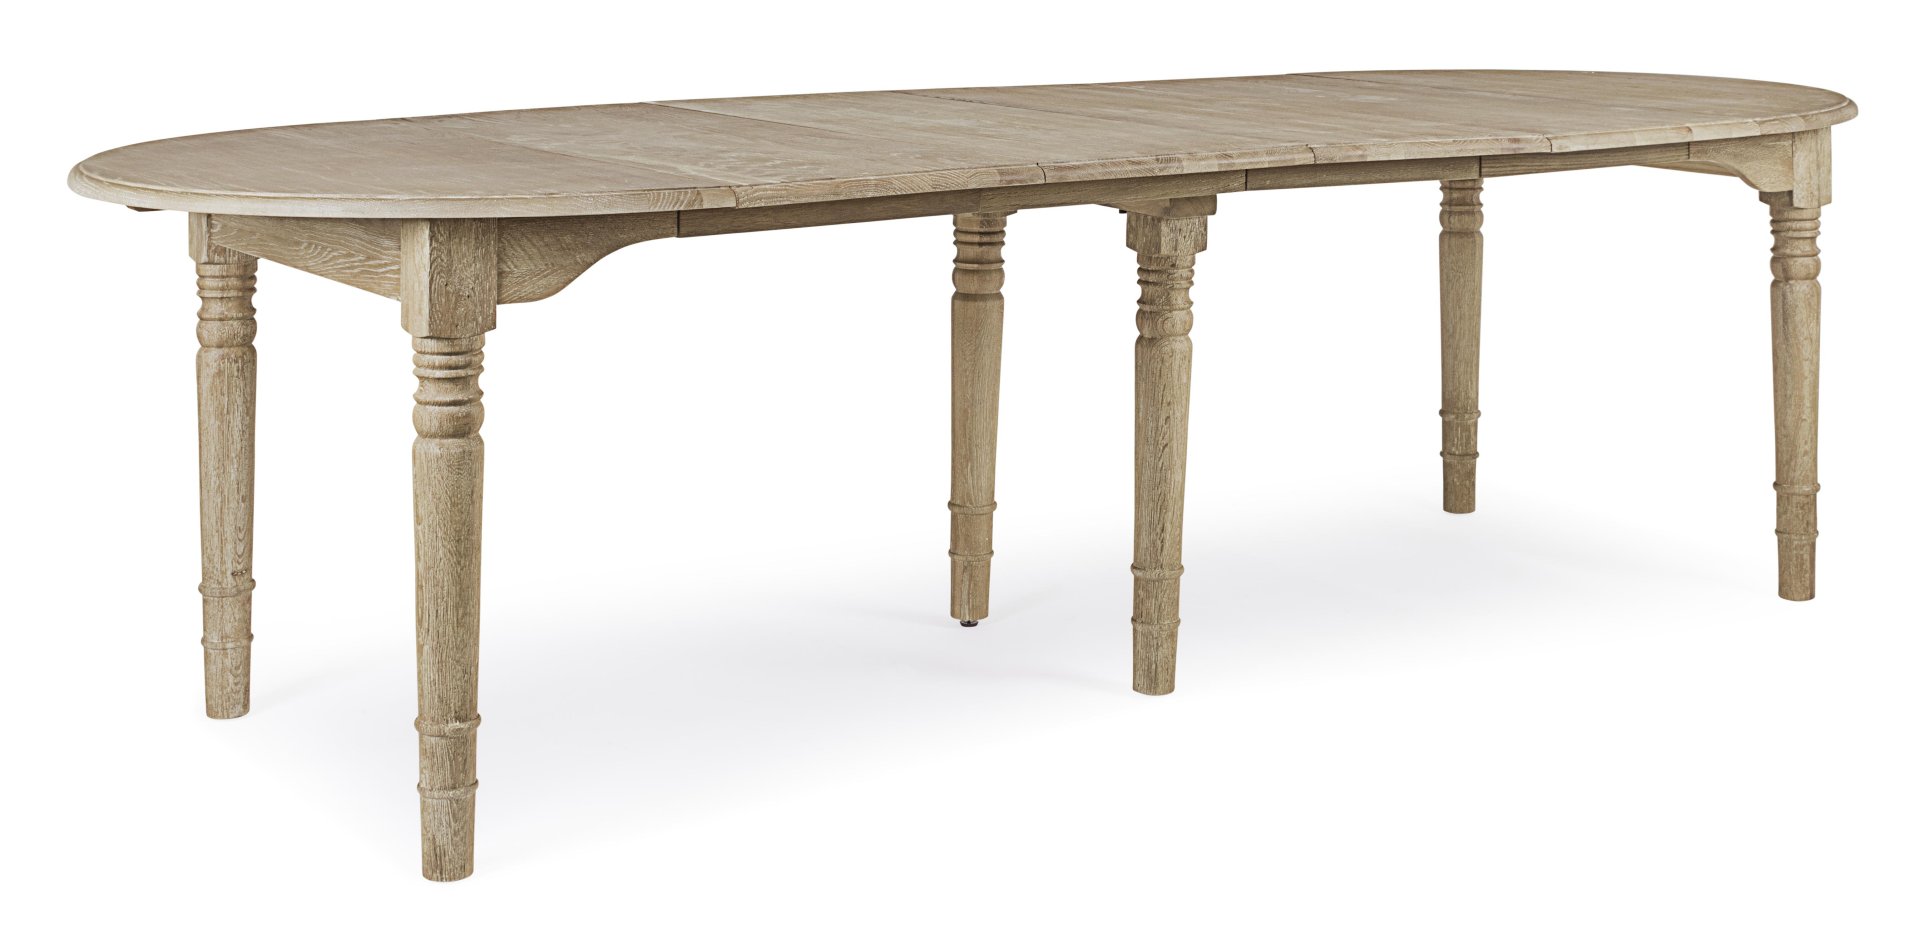 Der Esstisch Bedford überzeugt mit seinem klassischem Design. Gefertigt wurde er aus Eichenholz, welches einen natürlichen Farbton besitzt. Der Tisch ist ausziehbar von einer Länge von 110 cm auf 272 cm.